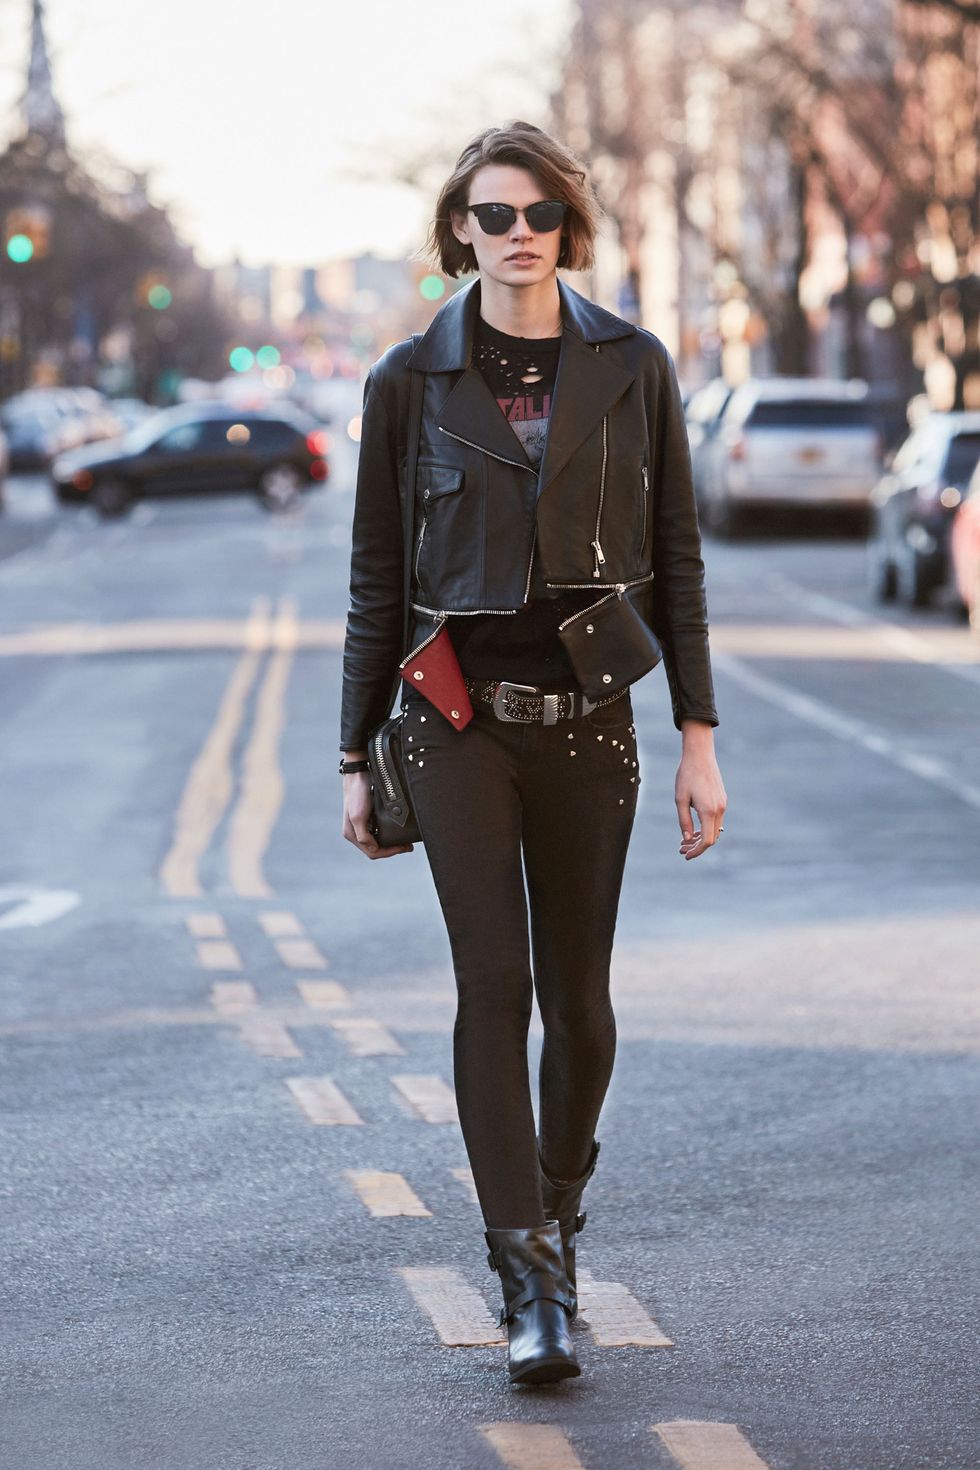 Women's Black Leather Biker Jacket, Black Turtleneck, Black Leggings, Black  Studded Leather Pumps